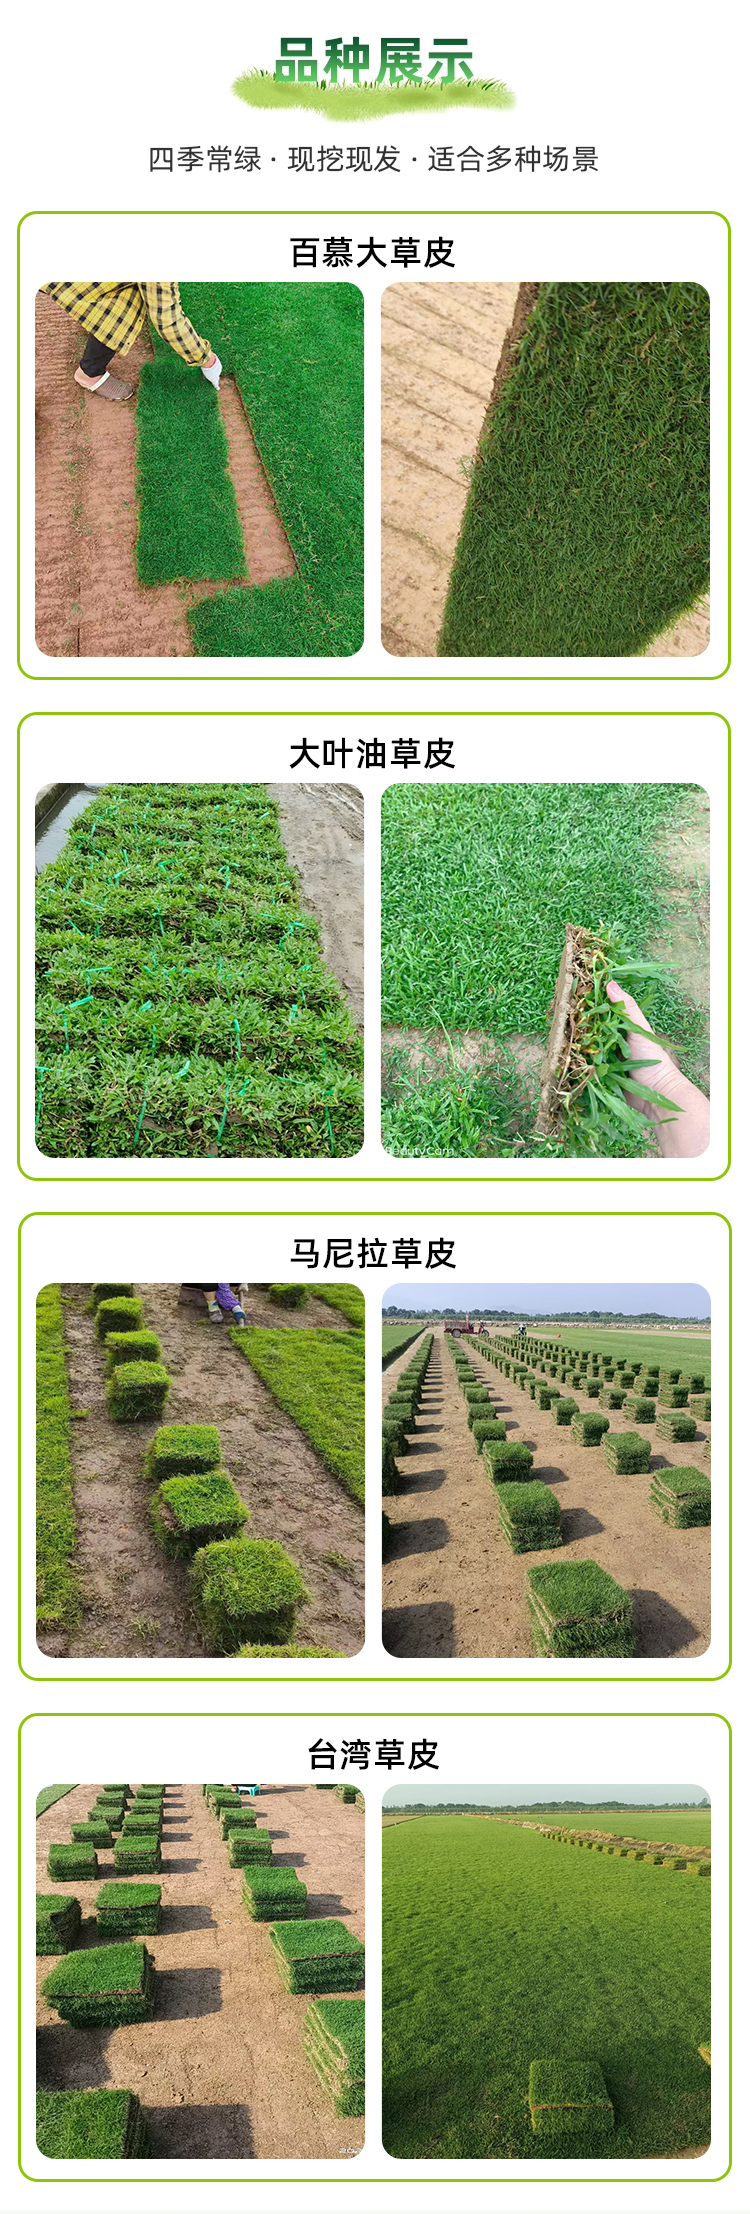 0823贺州常青园林绿化有限公司(1)_02.jpg